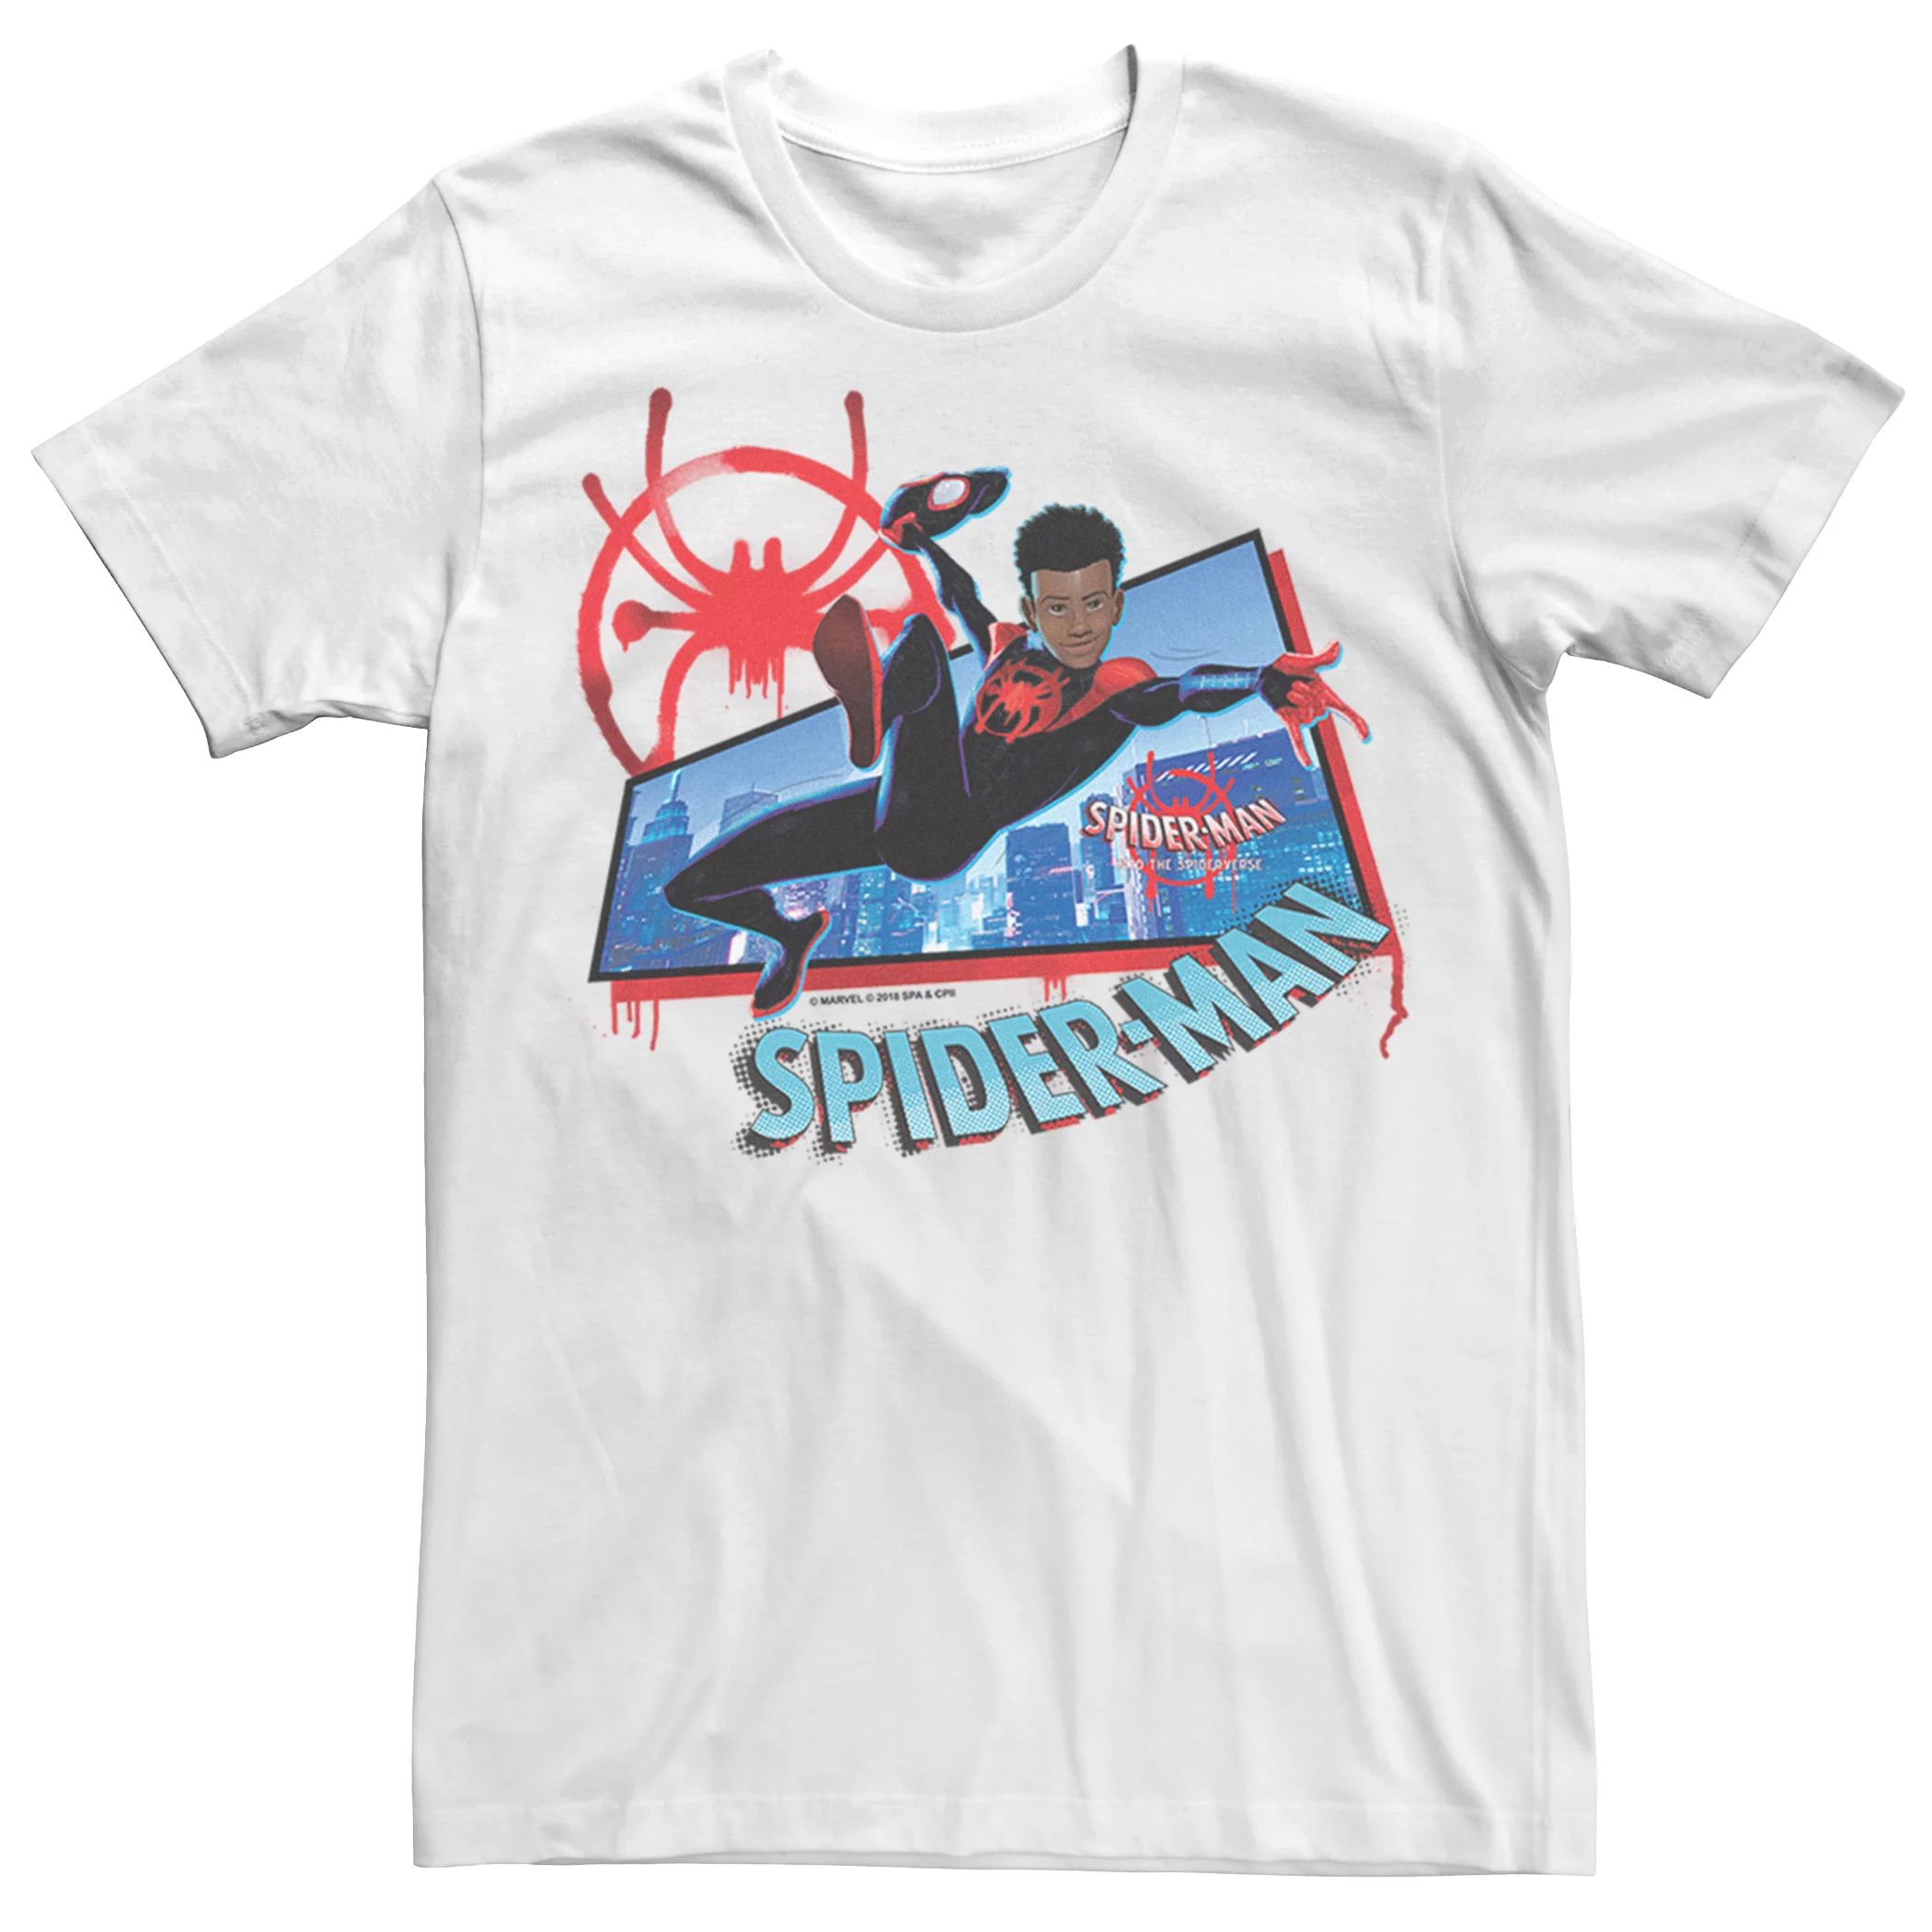 Мужская футболка с короткими рукавами и рисунком Marvel Spider-Verse Morales Spider-Man Licensed Character